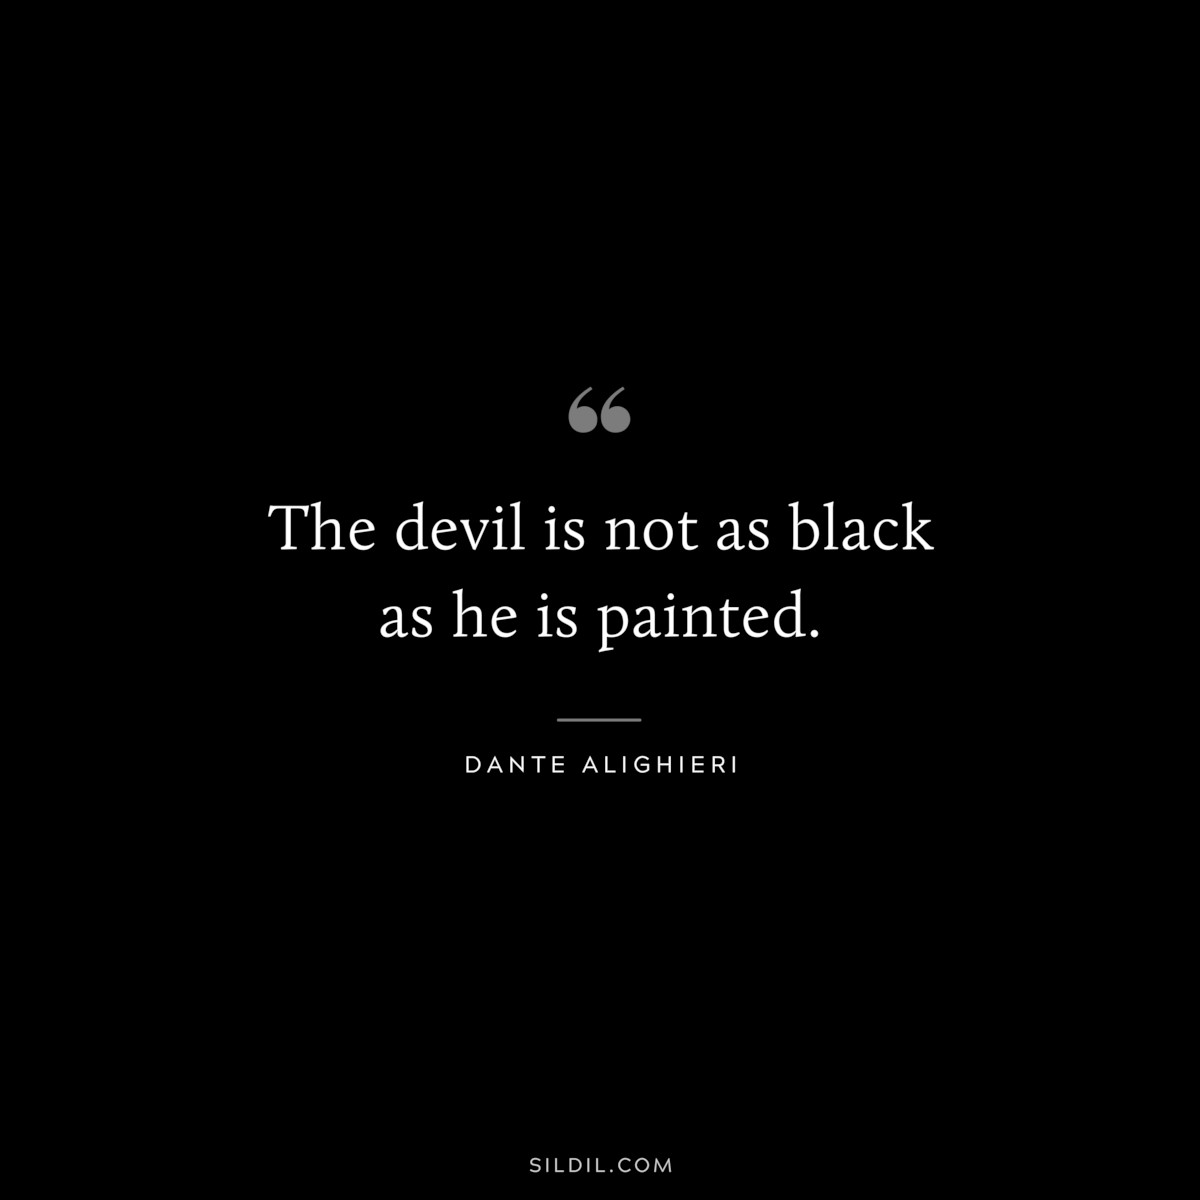 The devil is not as black as he is painted. ― Dante Alighieri